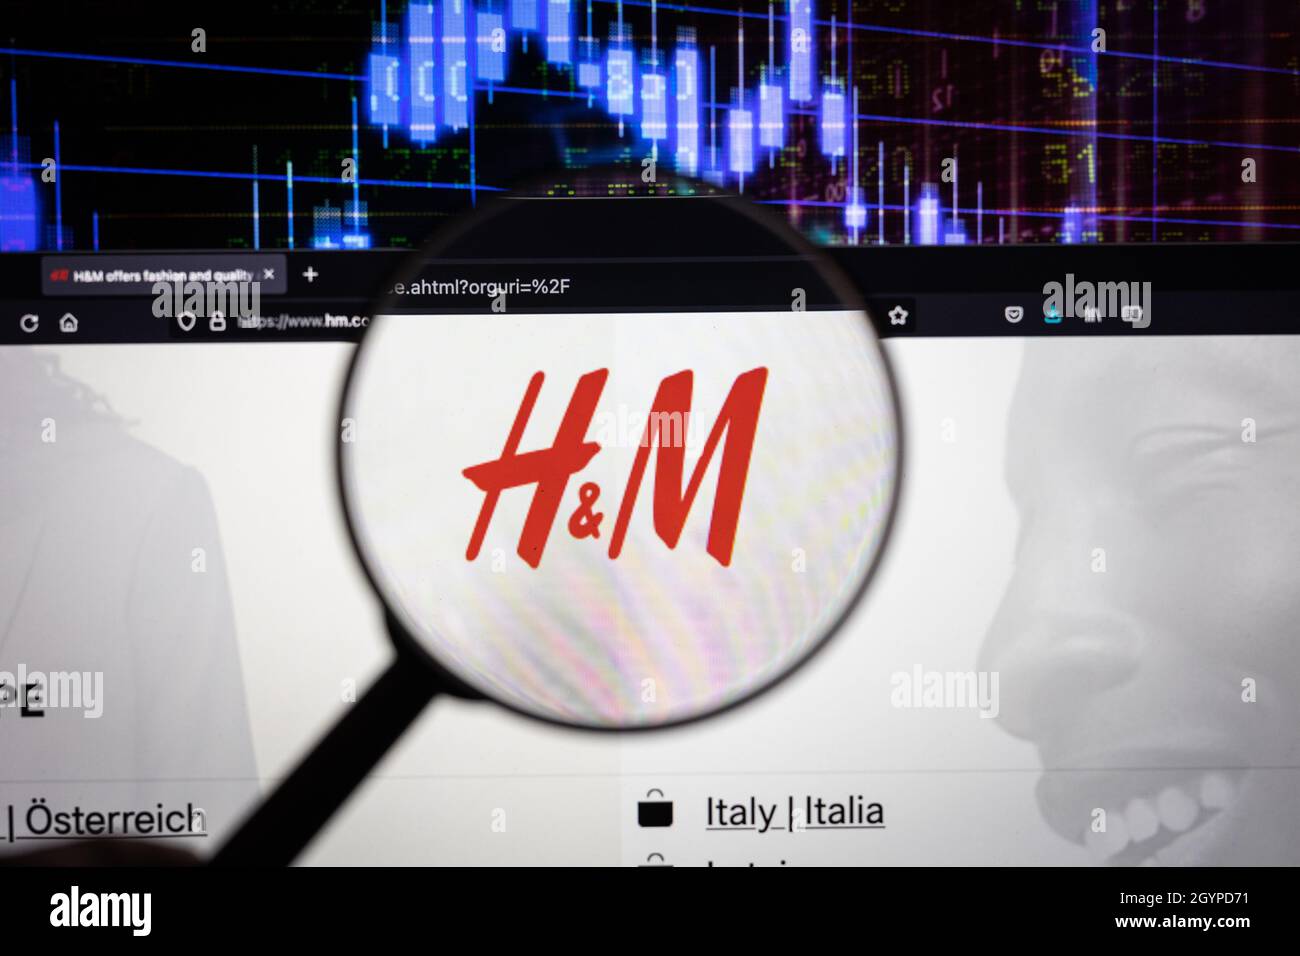 Logotipo de la empresa H&M en un sitio web con una evolución borrosa del  mercado de valores en el fondo, visto en una pantalla de ordenador a través  de una lupa Fotografía